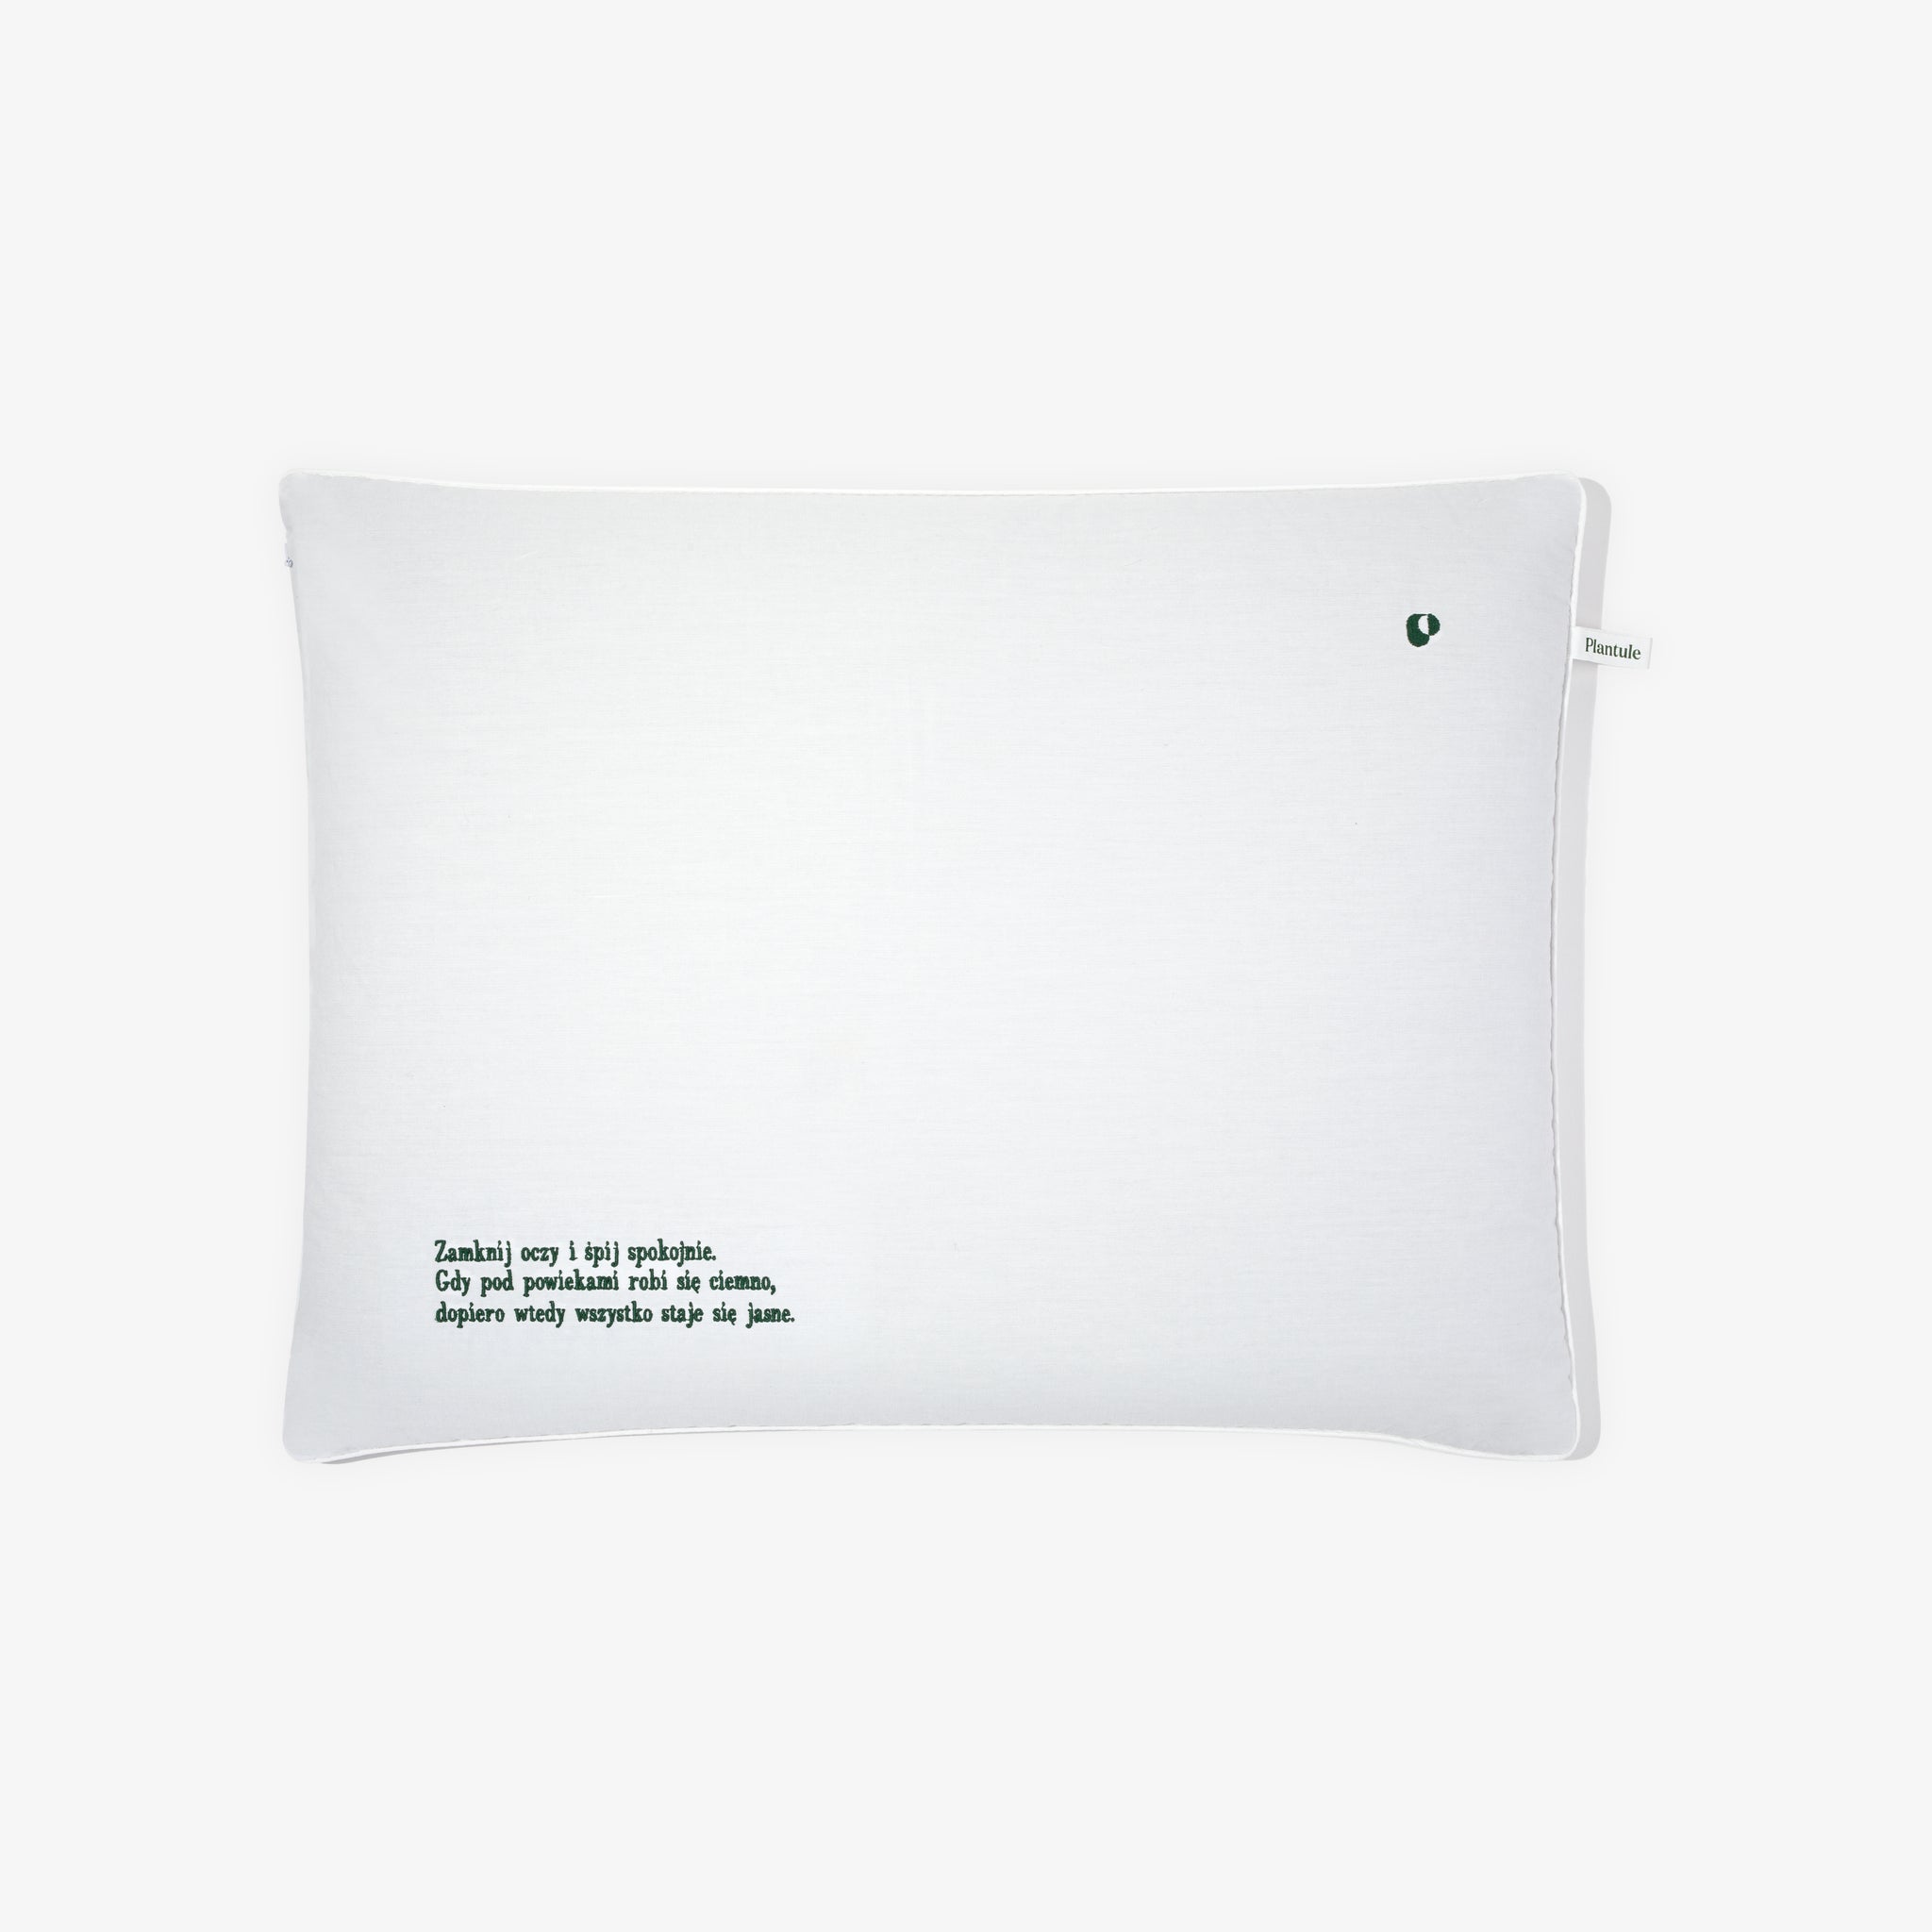 Good Dreams Pillow Plantule x Textile 45x60 cm